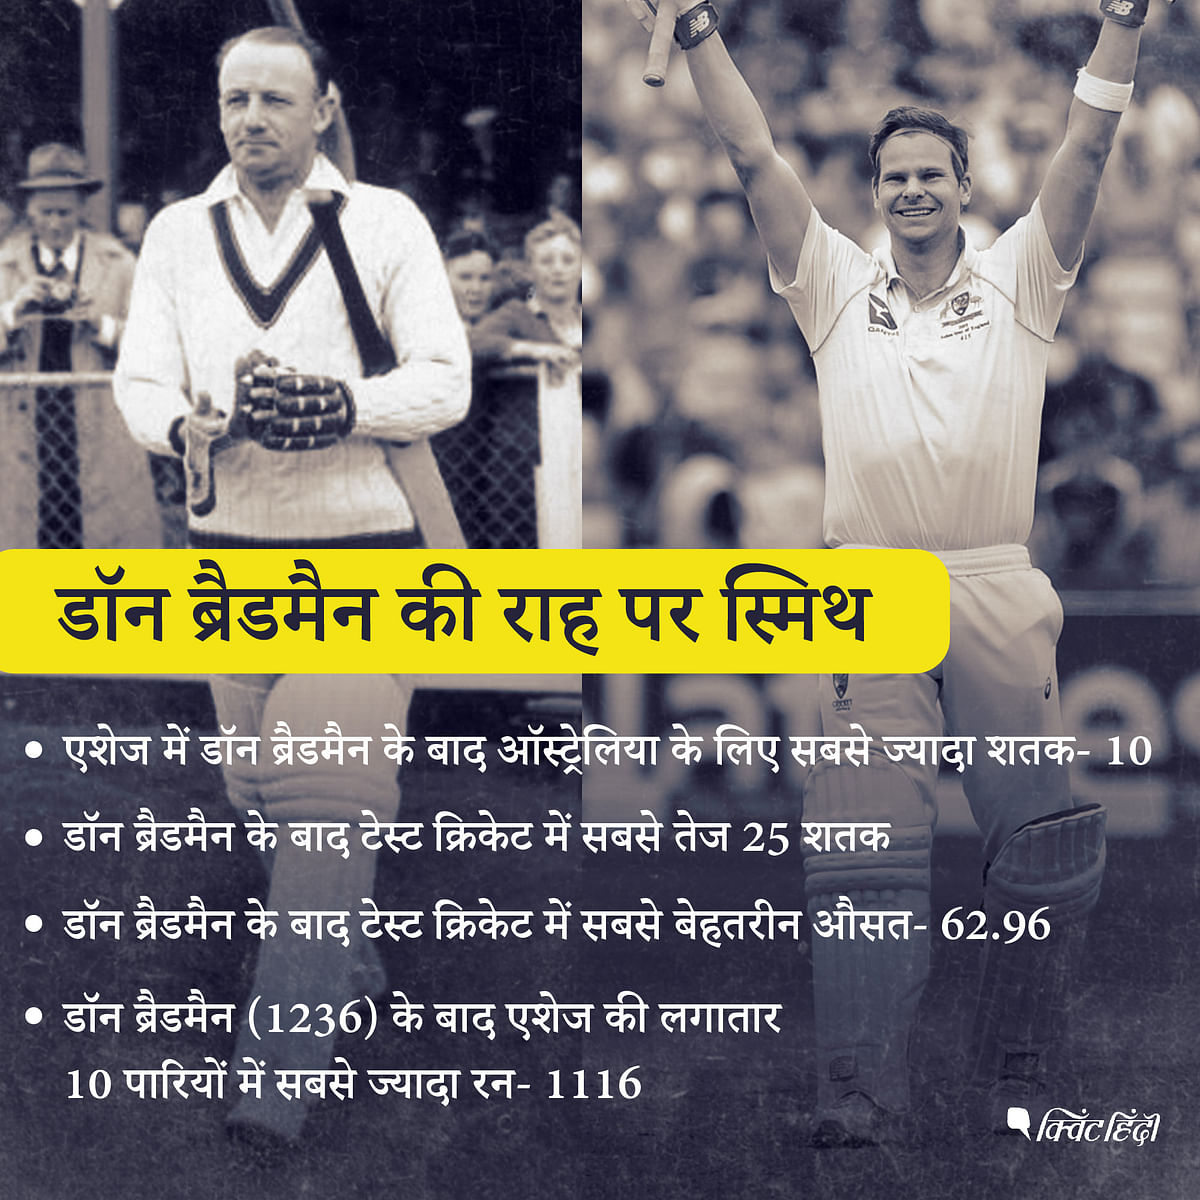 स्टीव स्मिथ का टेस्ट क्रिकेट में बैटिंग एवरेज सर डॉन ब्रैडमैन के बाद सबसे ज्यादा है